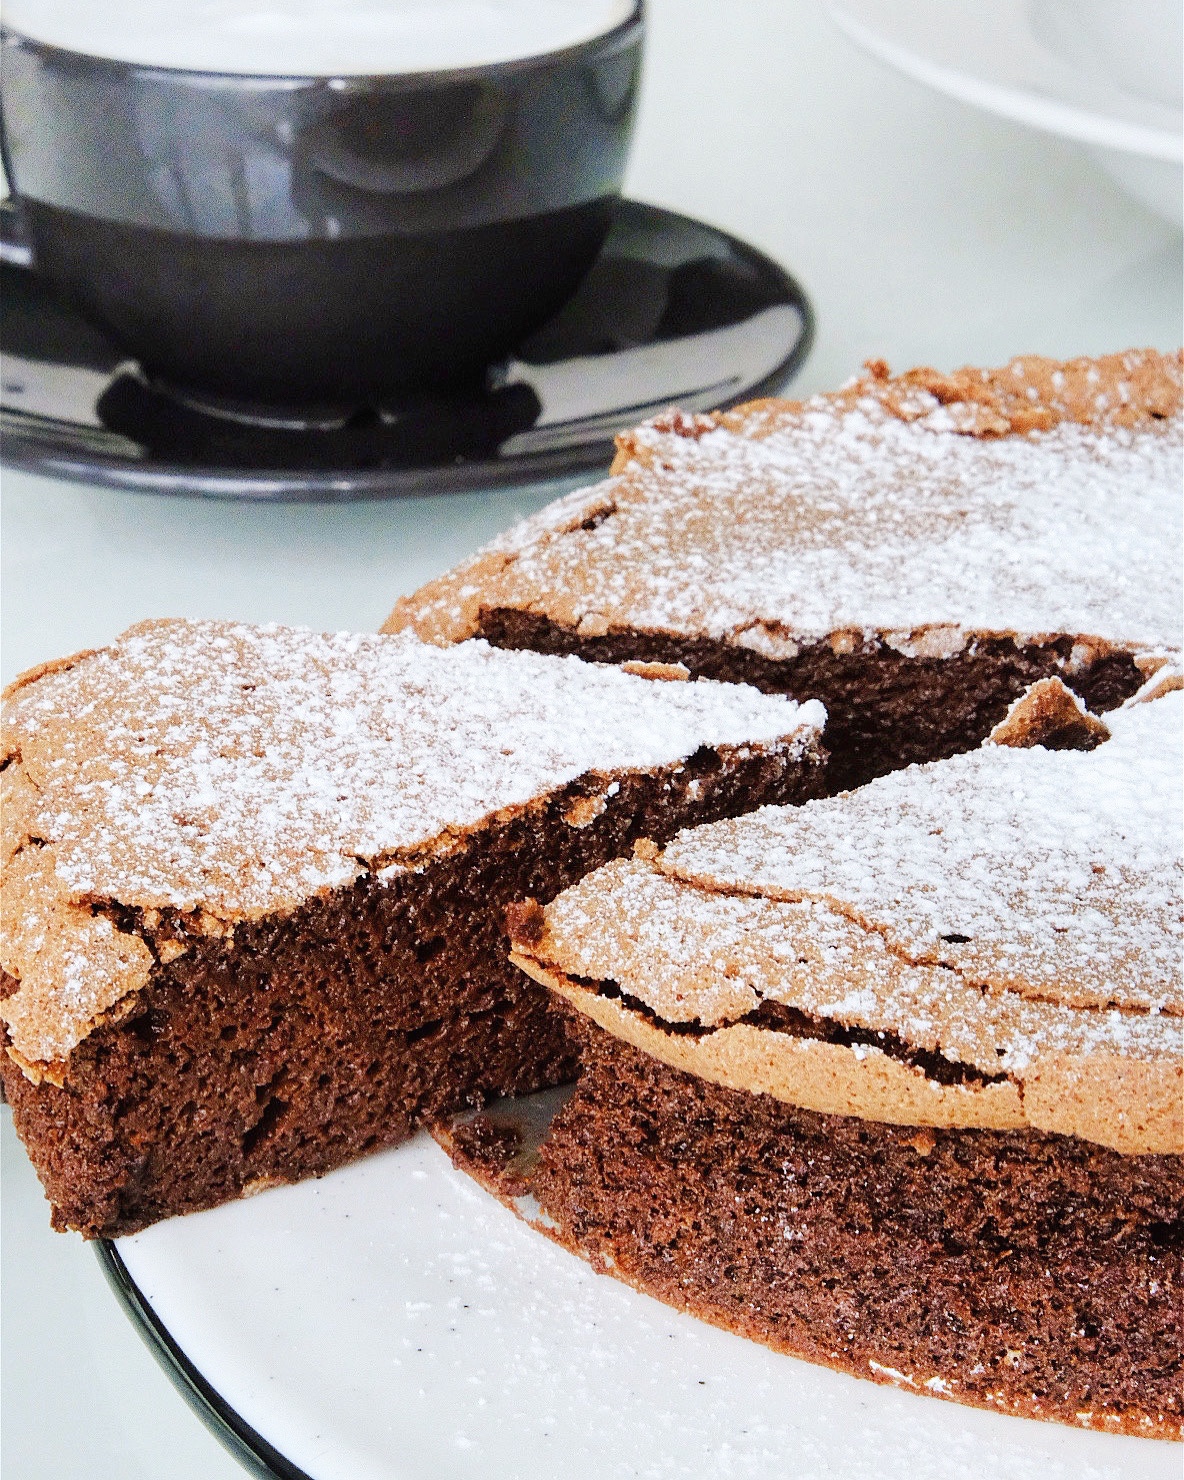 法国烘焙学习笔记分享:
无面粉巧克力蛋糕的做法